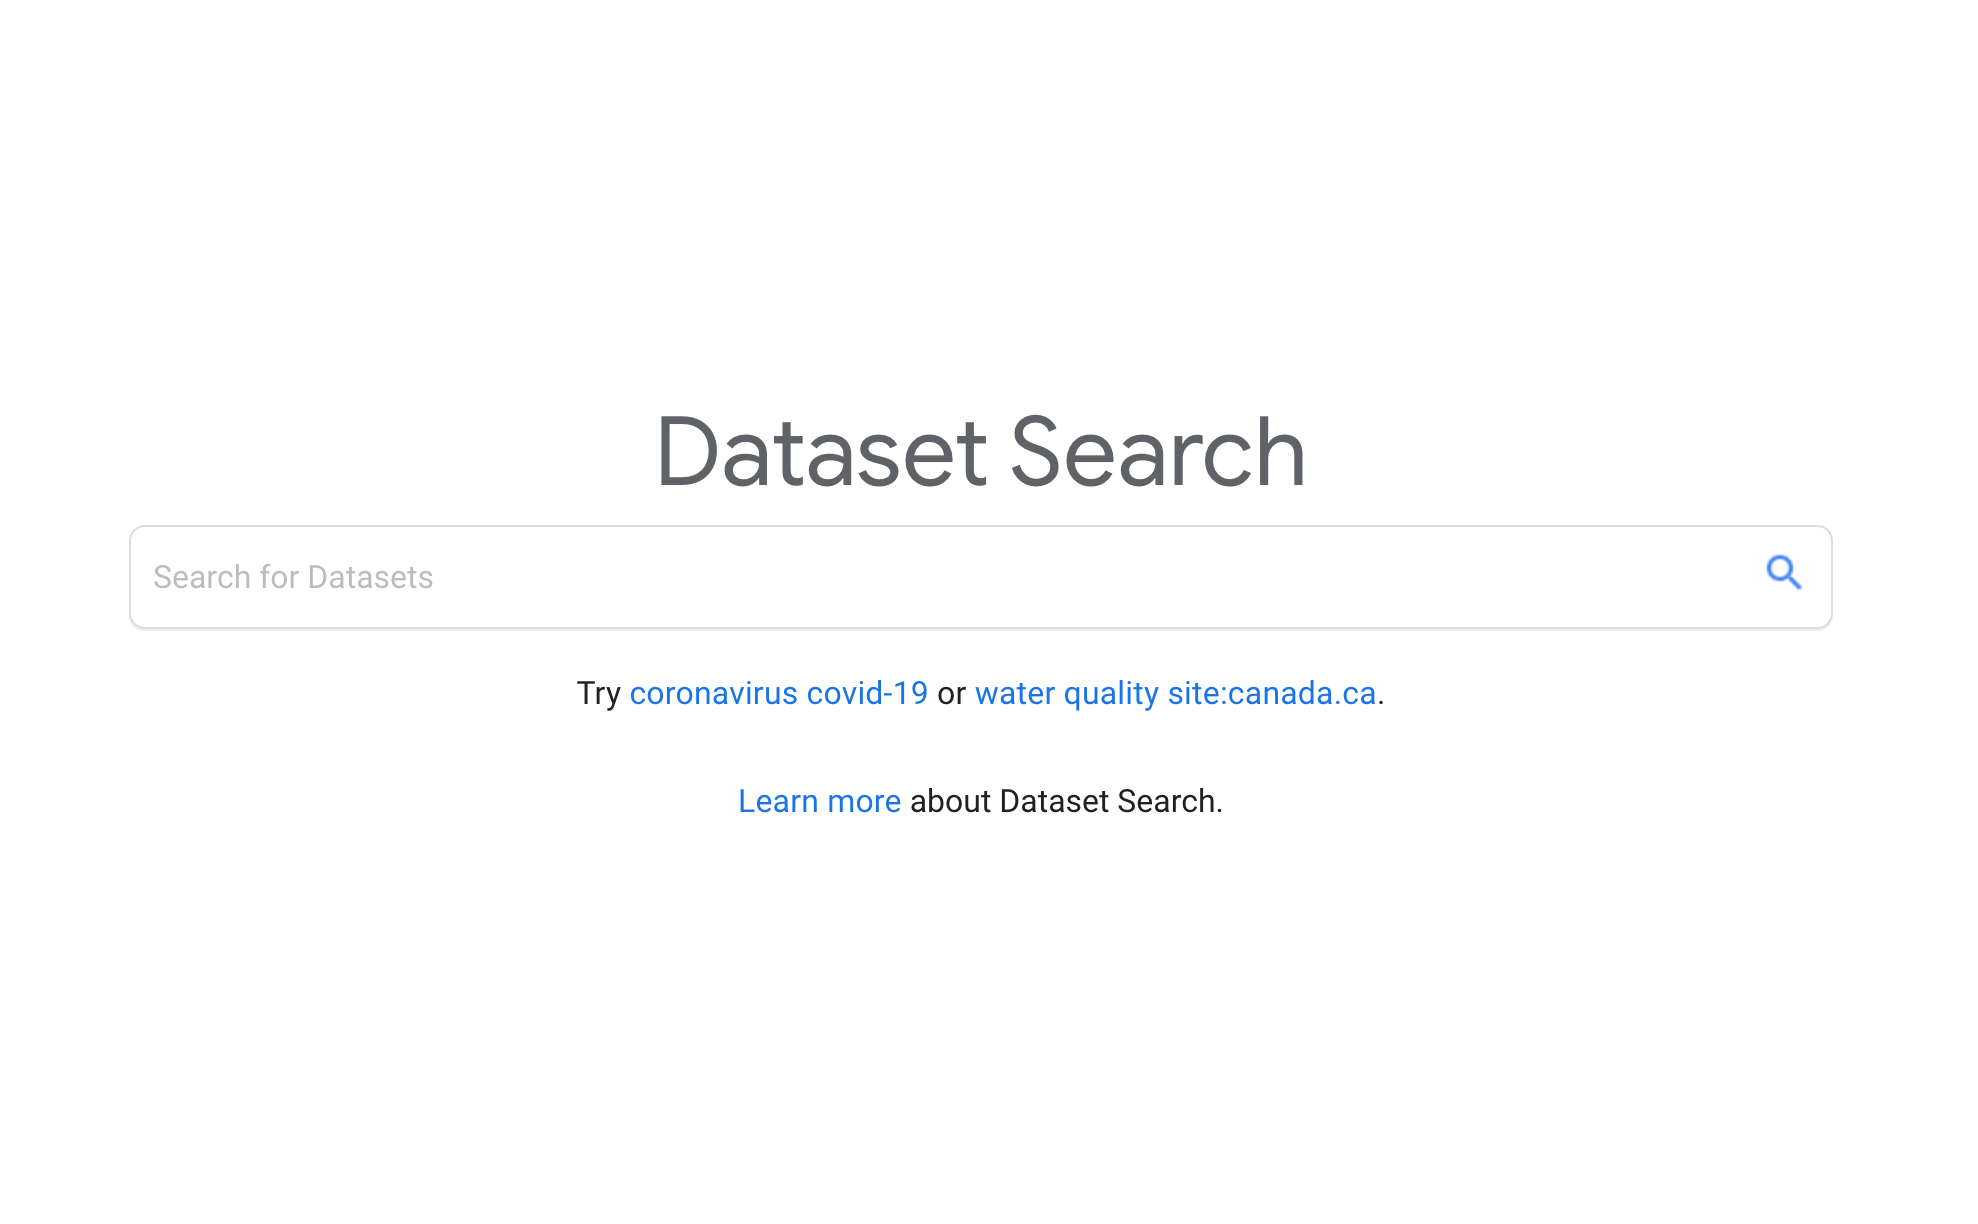 Dataset Search Landing page